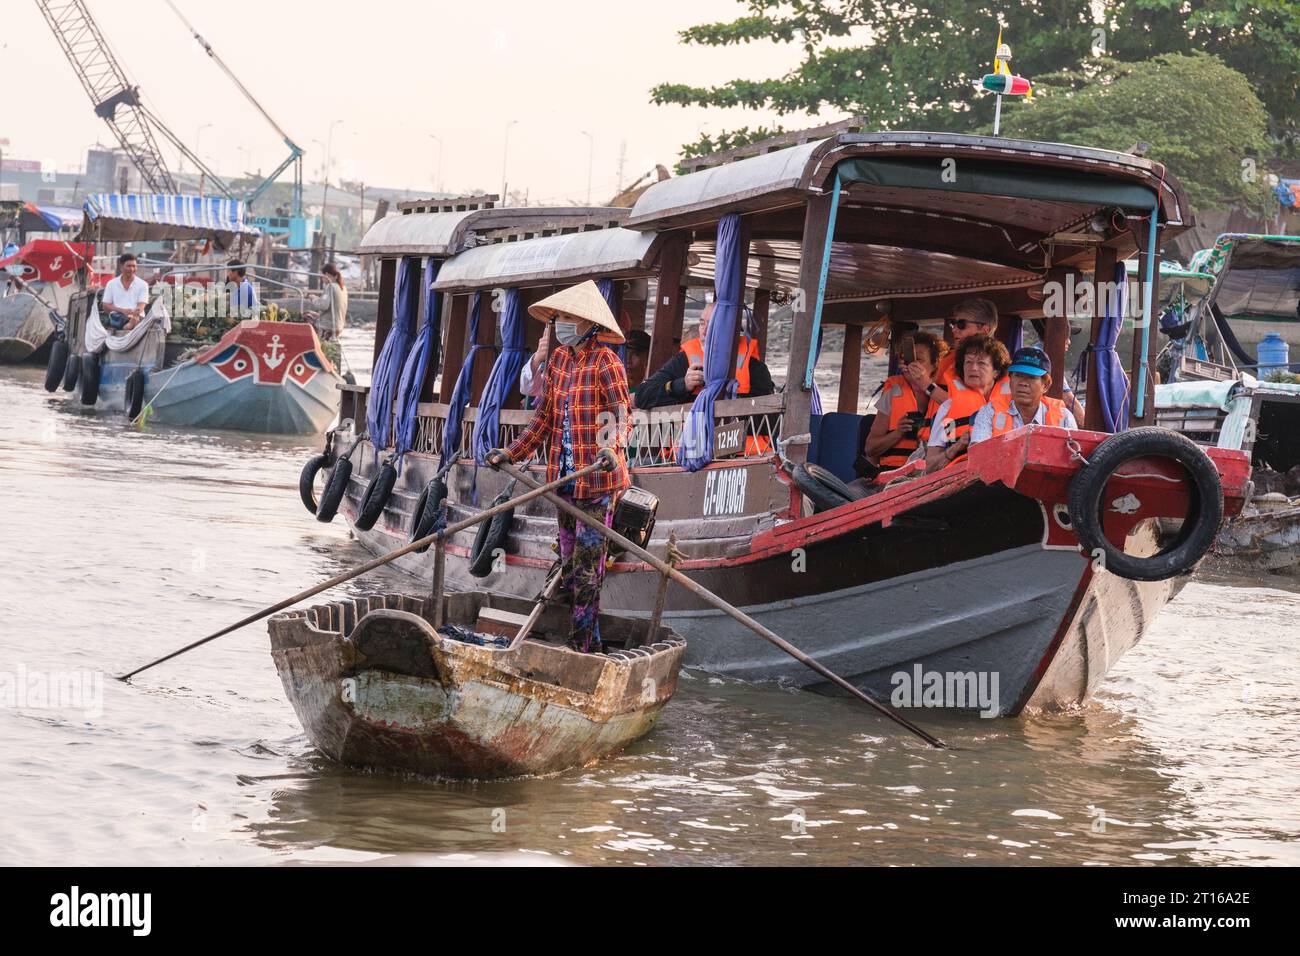 Scène du marché flottant de Phong Dien, près de CAN Tho, Vietnam. Bateau touristique. Banque D'Images